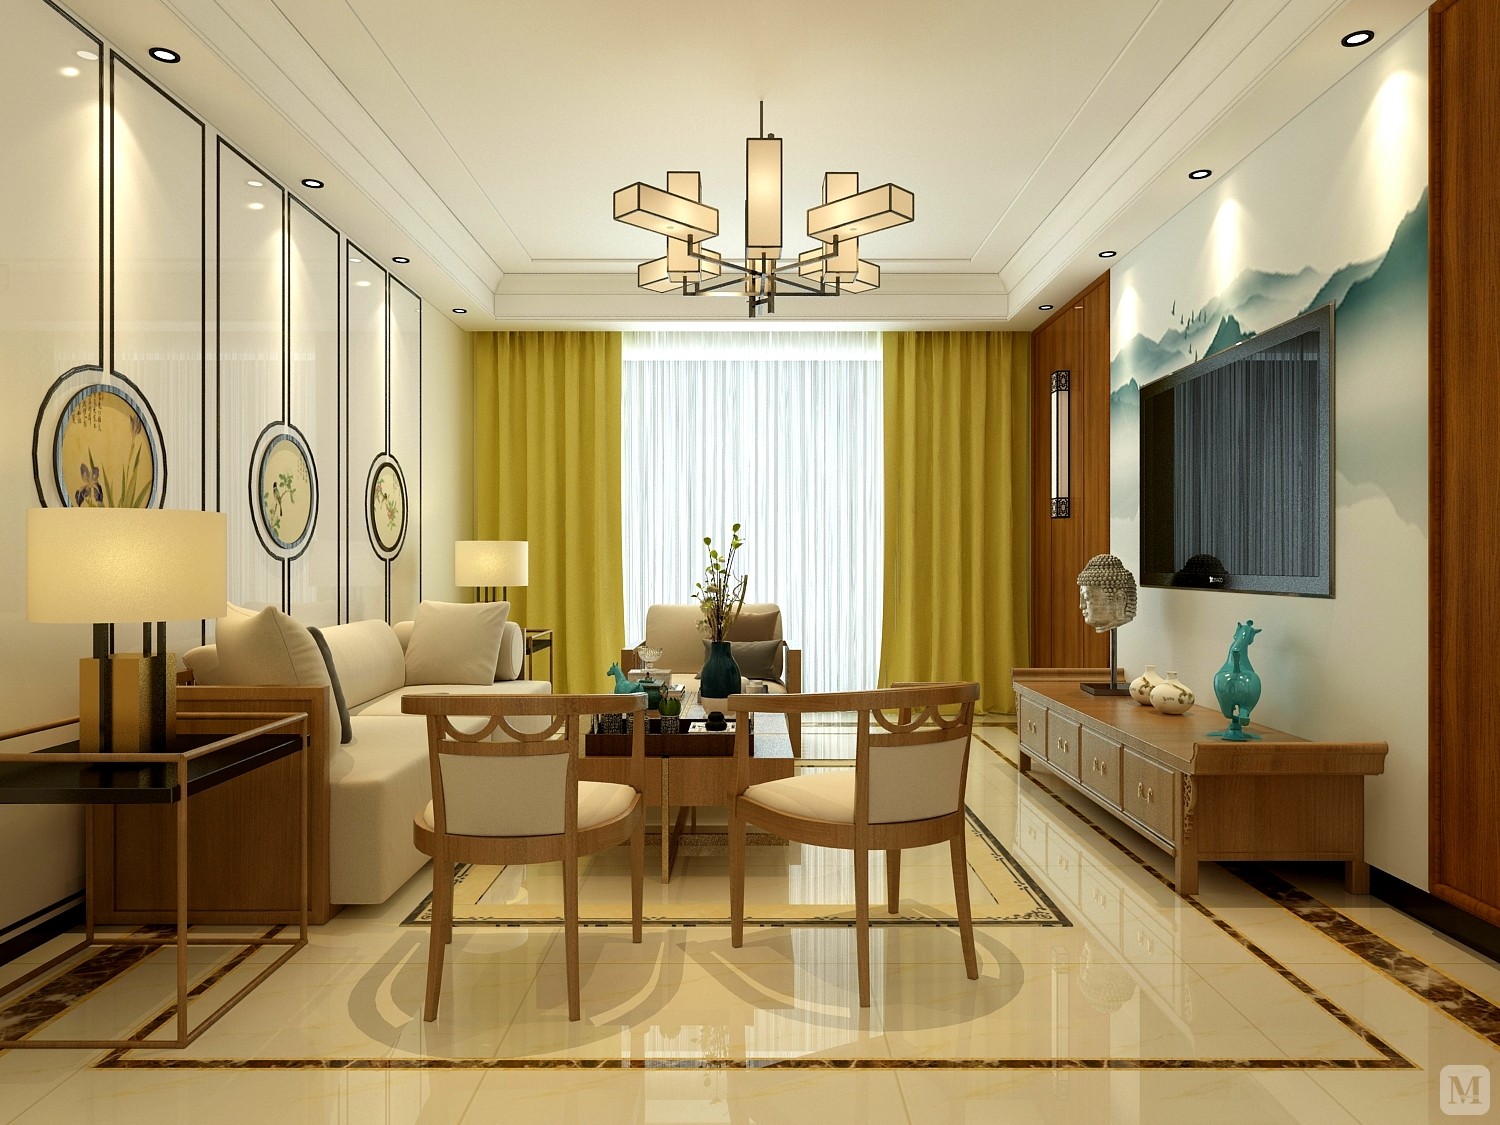 室内多采用对称式的布局方式,格调高雅,造型简朴优美,色彩浓重而成熟.